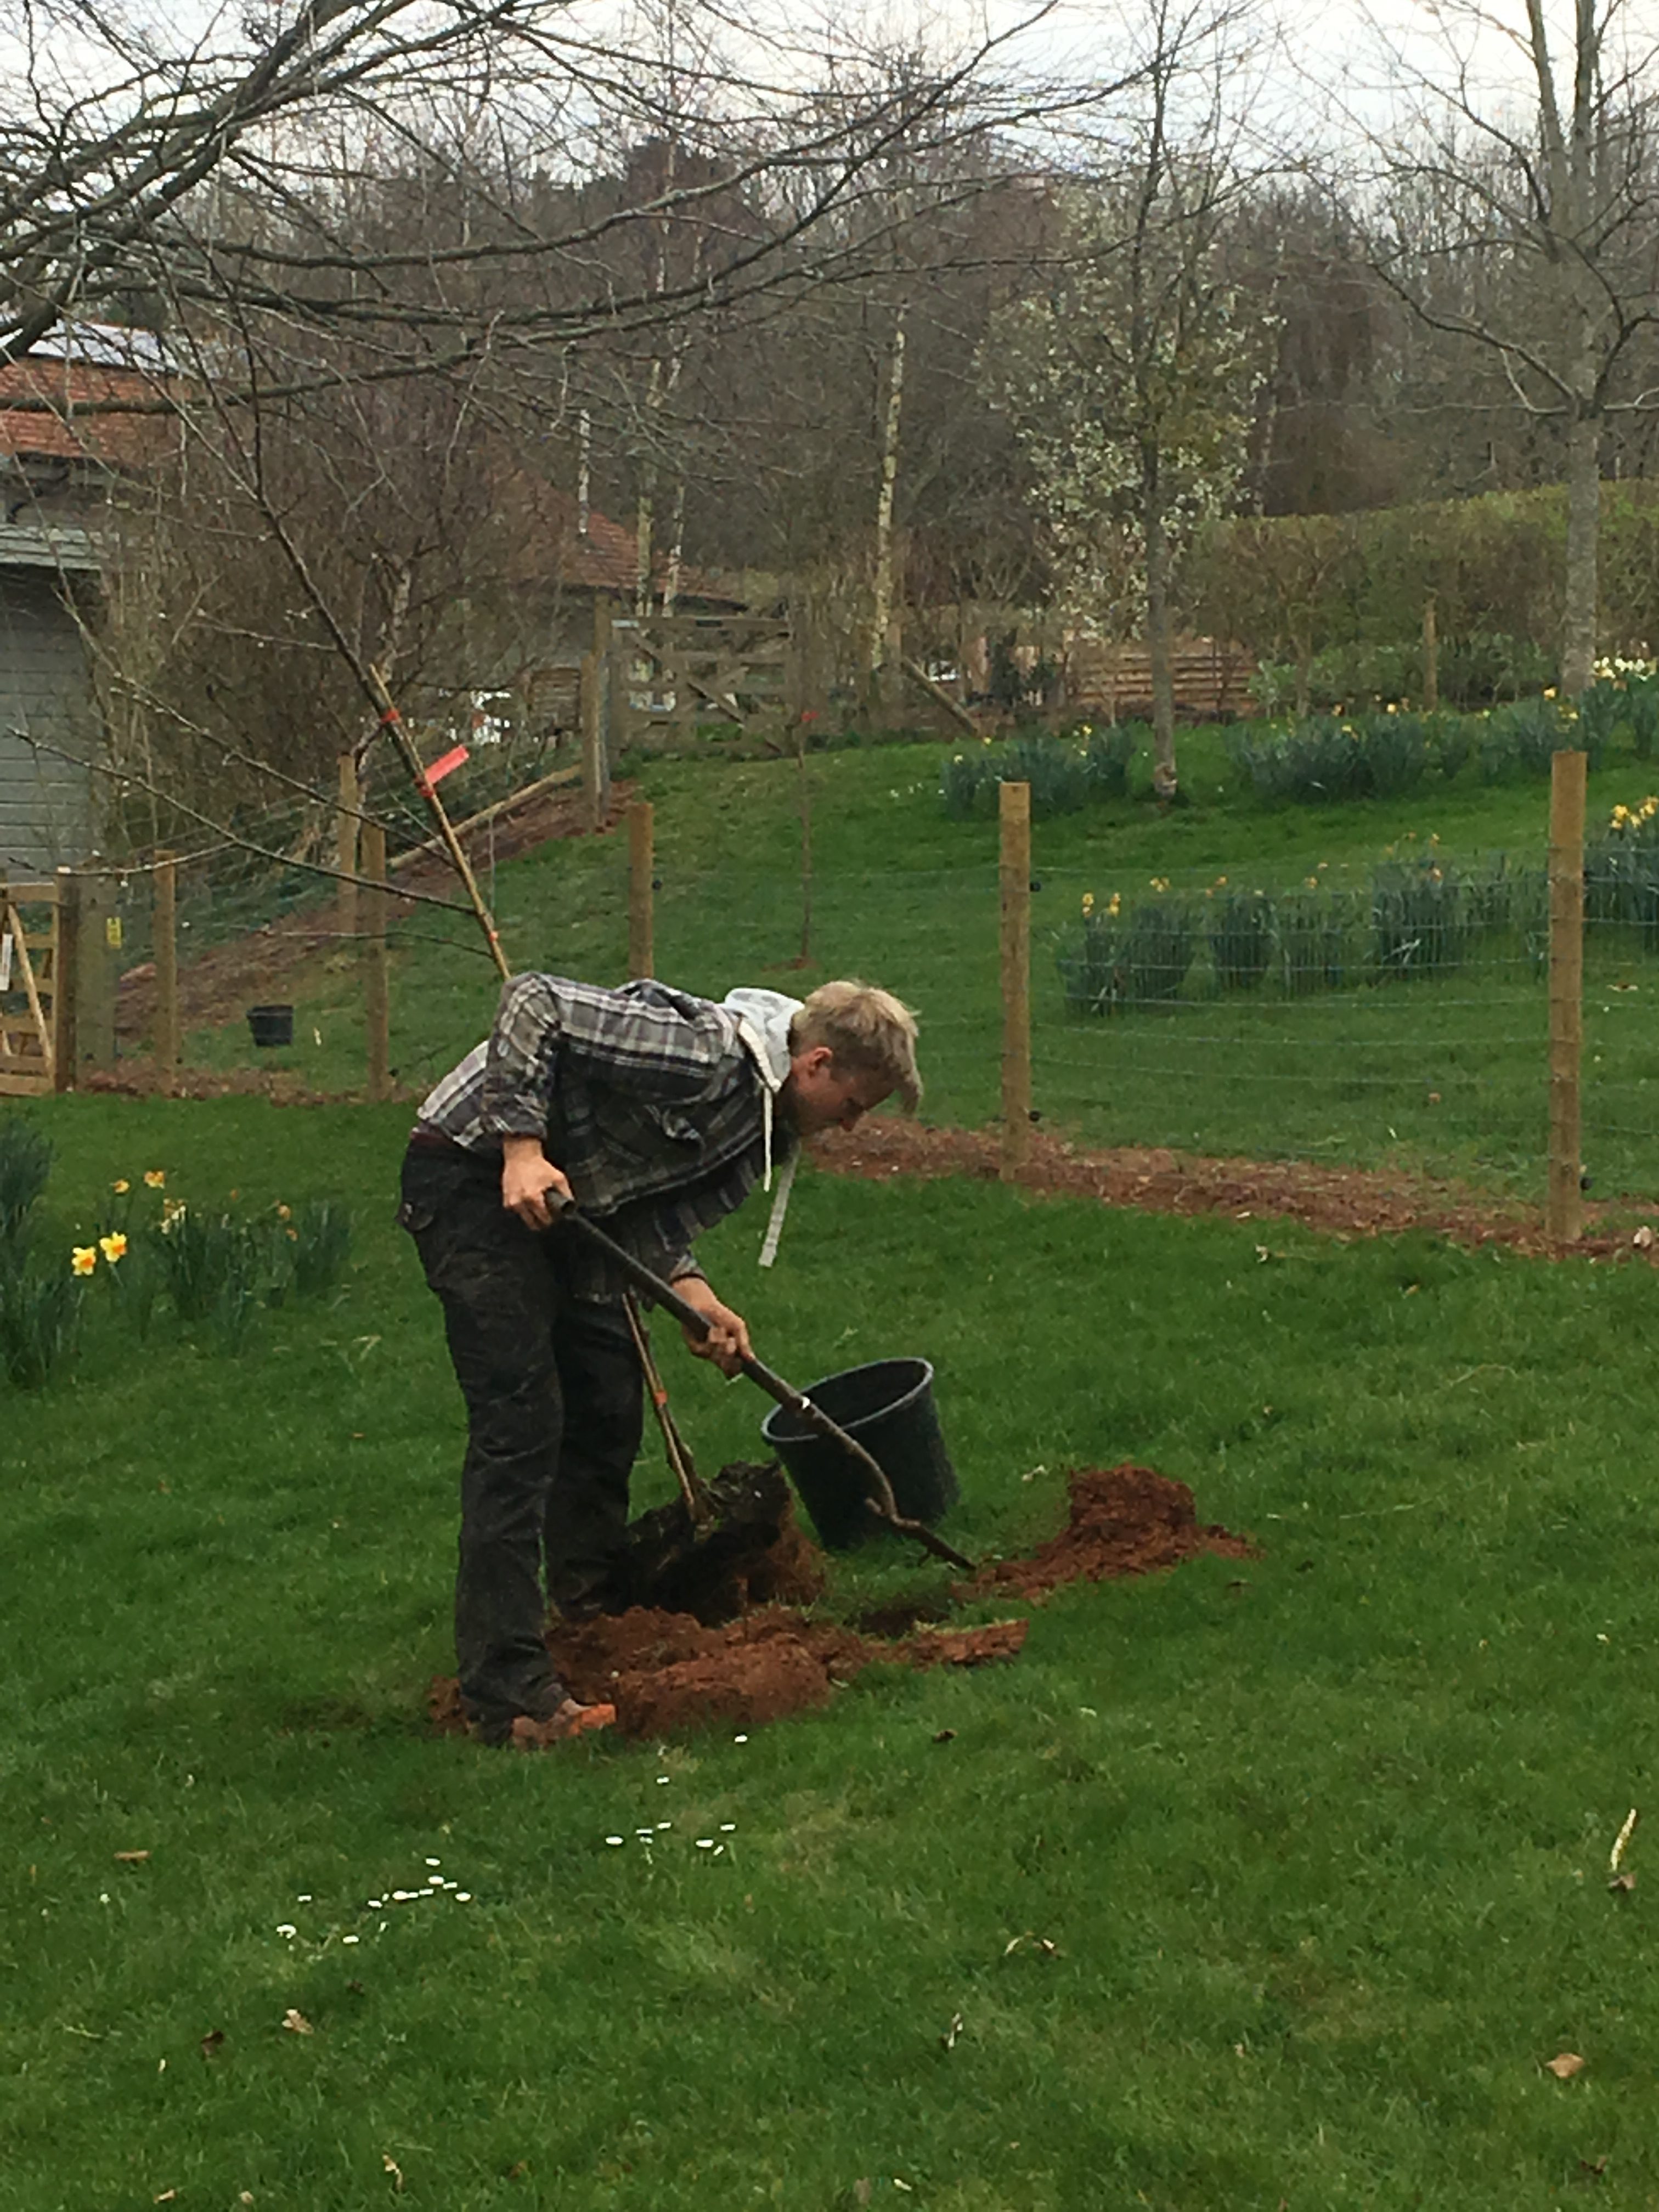 Joe hard at work planting the new orchard